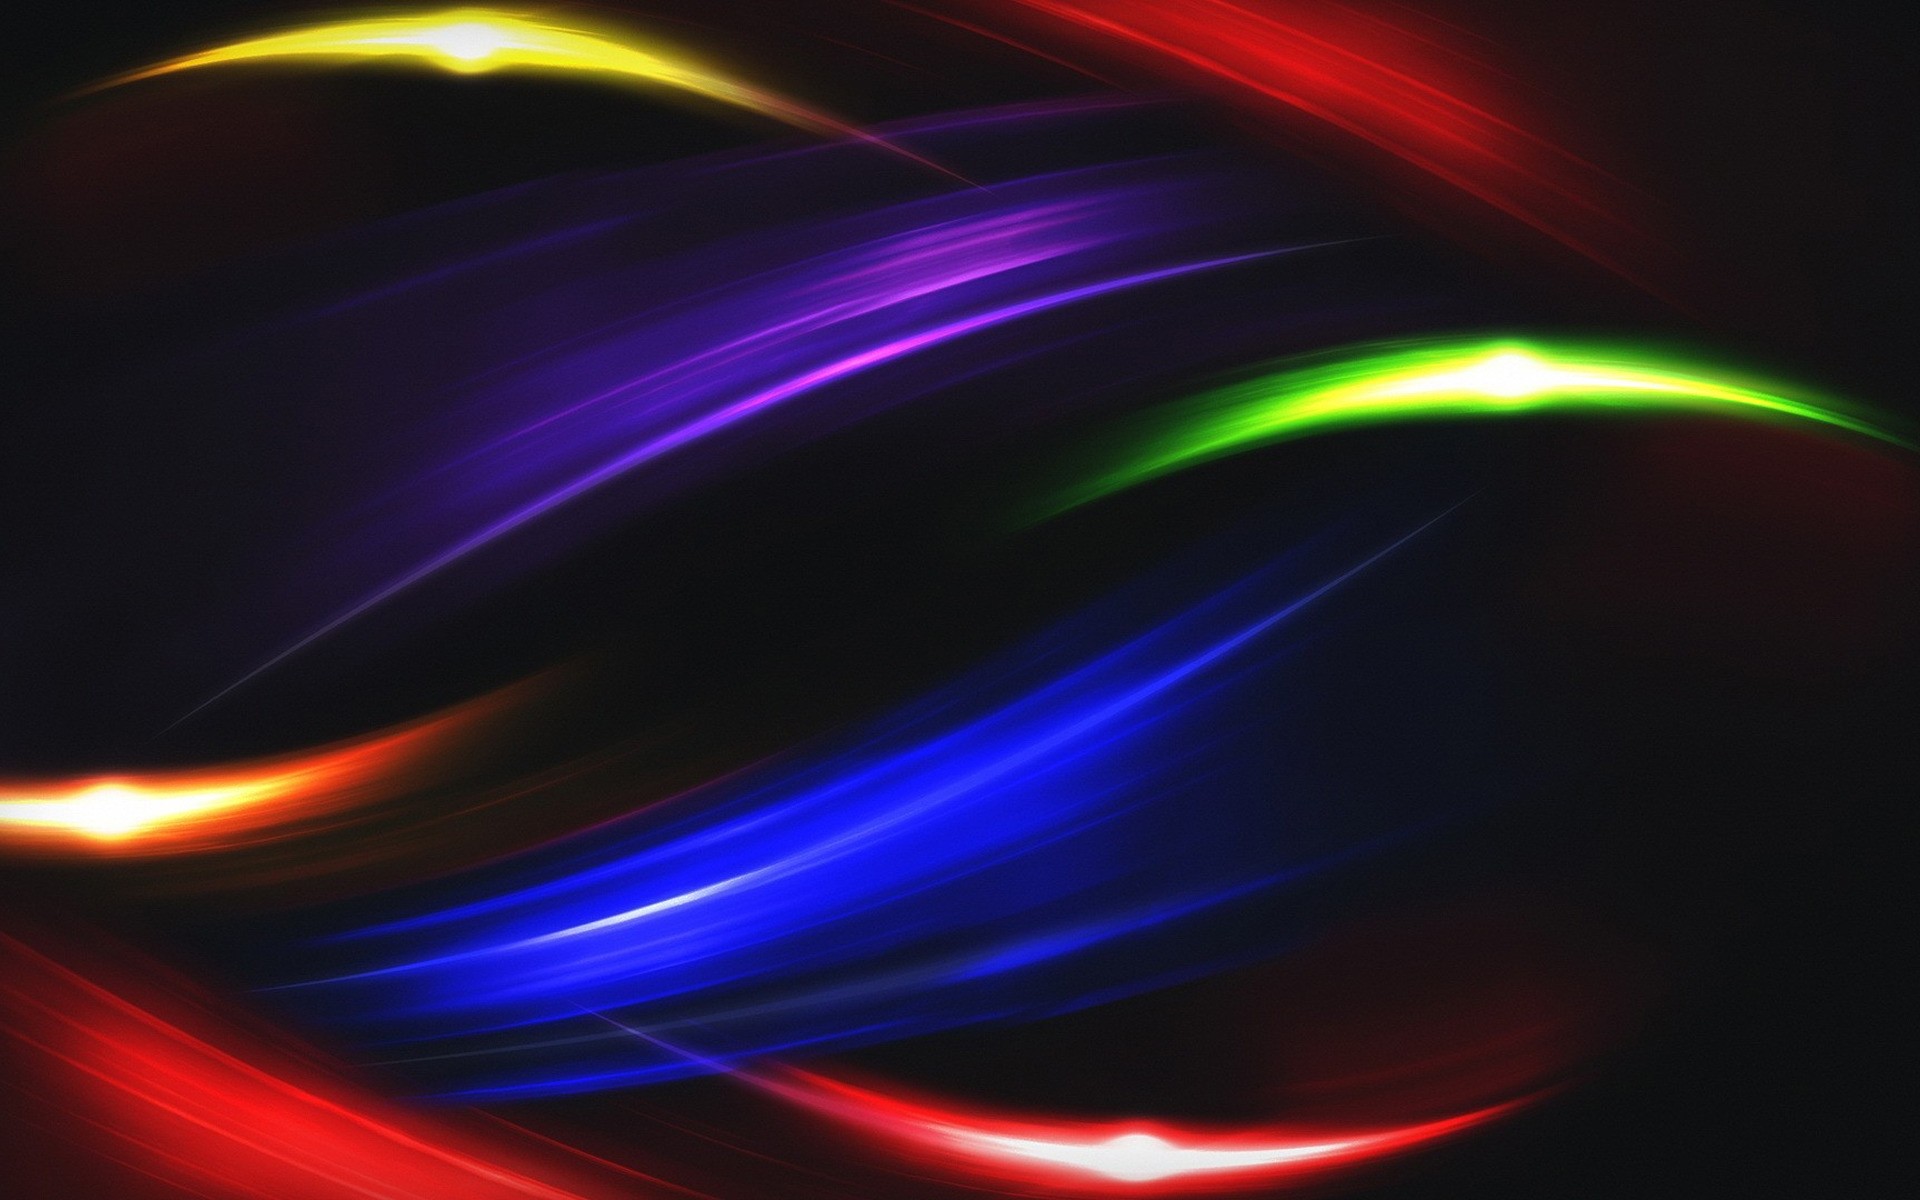 абстракция движения динамические размытость обои яркий кривая лазер свет график графический дизайн иллюстрация дизайн искусство фрактал вихрь линия гладкая светит цвета поворот